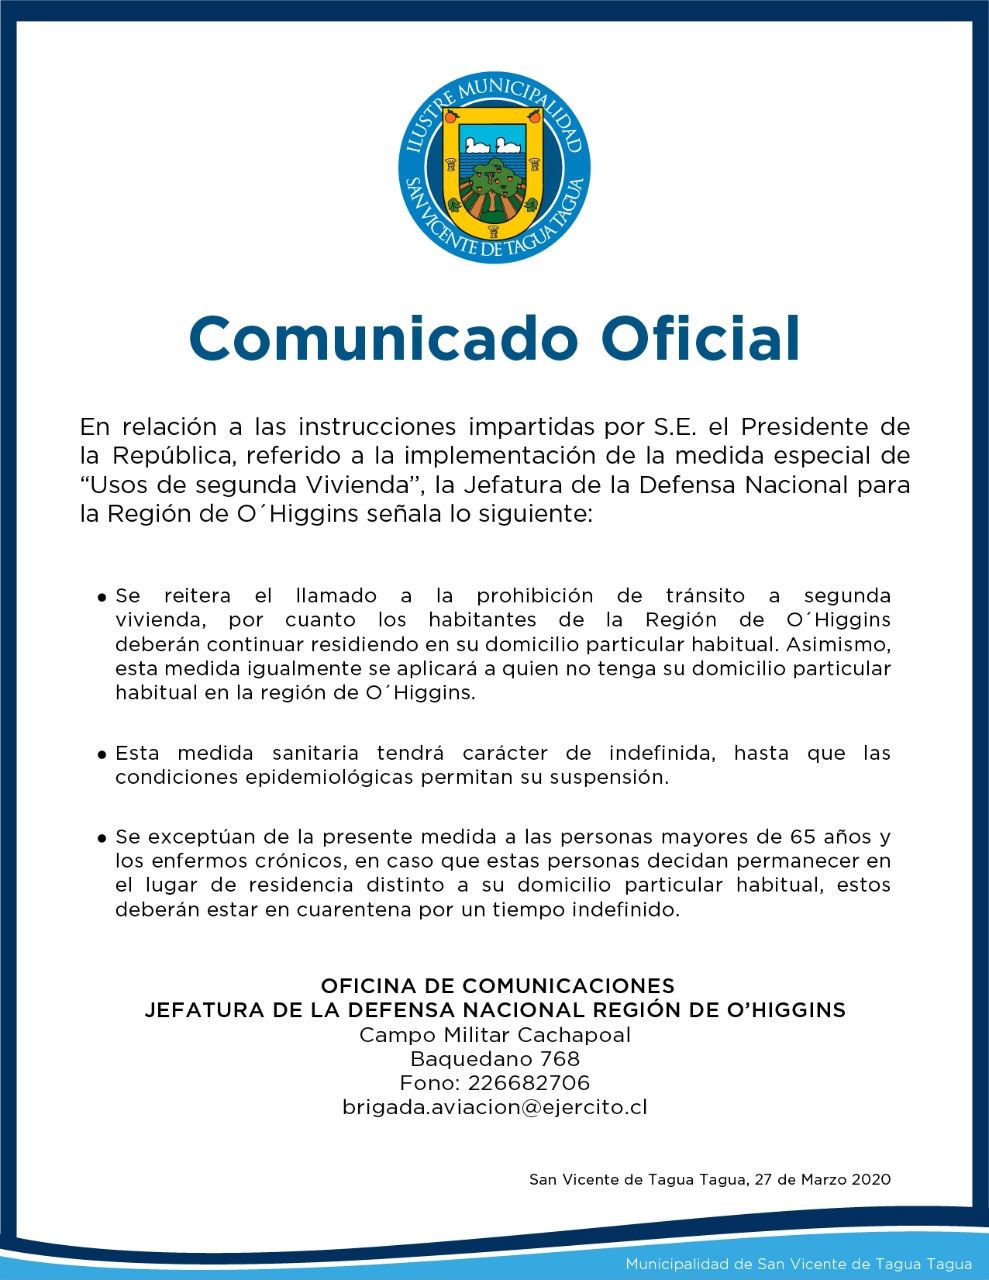 COMUNICADO OFICIAL JEFATURA DE LA DEFENSA NACIONAL REGIÓN DE O'HIGGINS